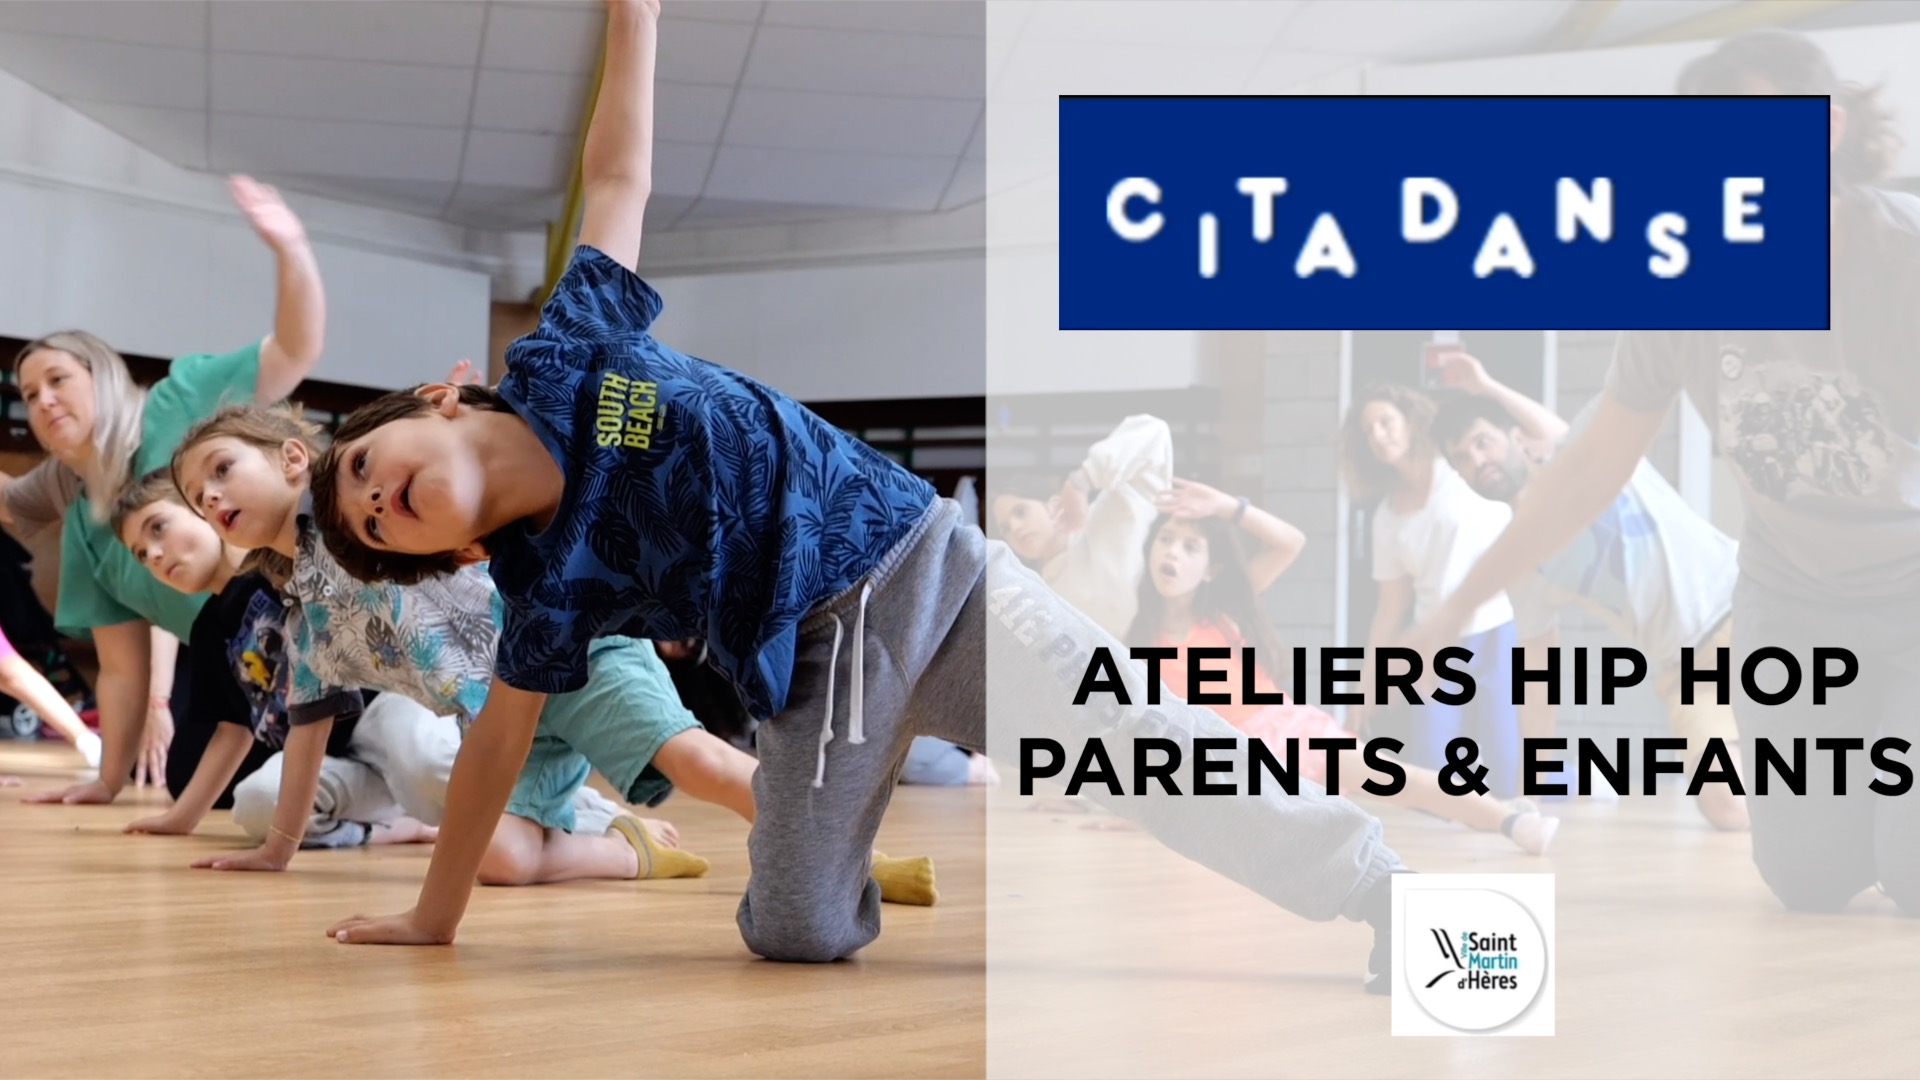 Cita danse Saint Martin d'Hères : Un atelier parent-enfant qui unit les générations à travers la danse